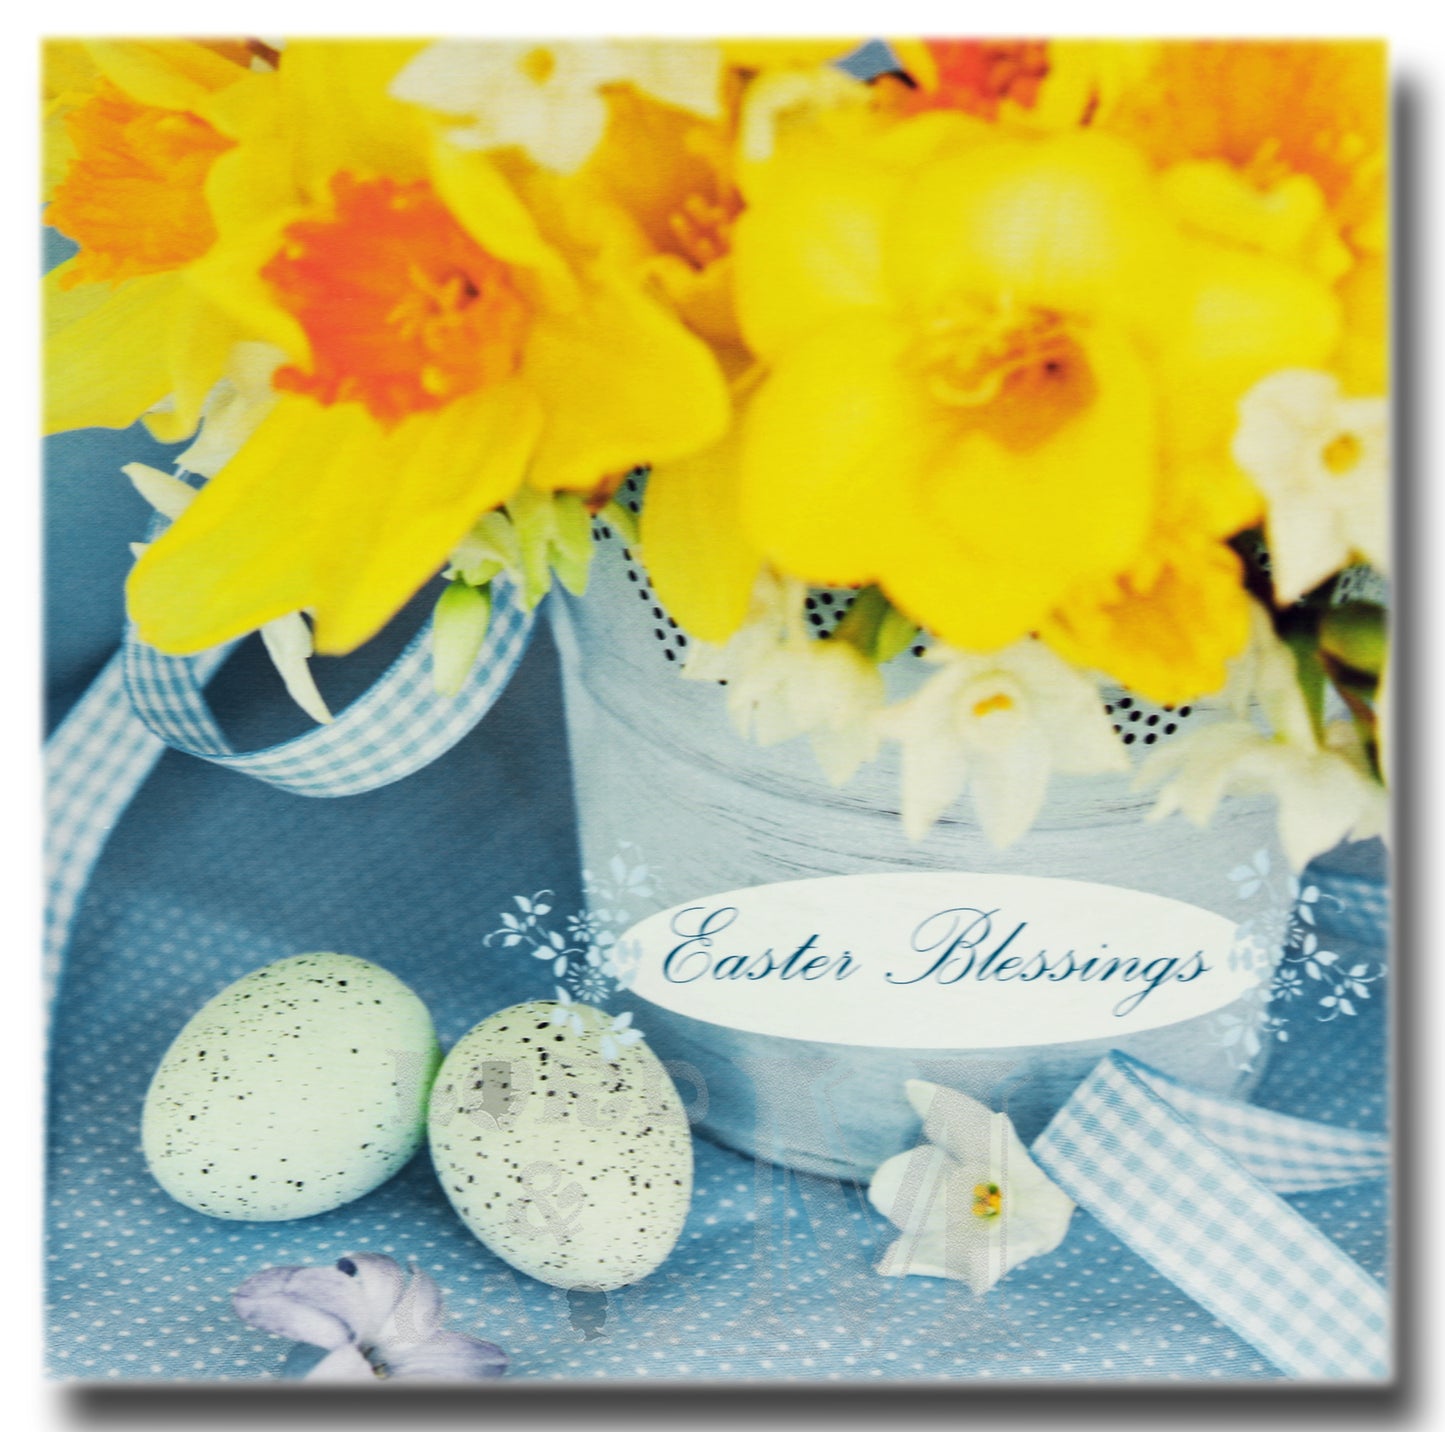 13cm - Easter Blessings - Daffodils Eggs